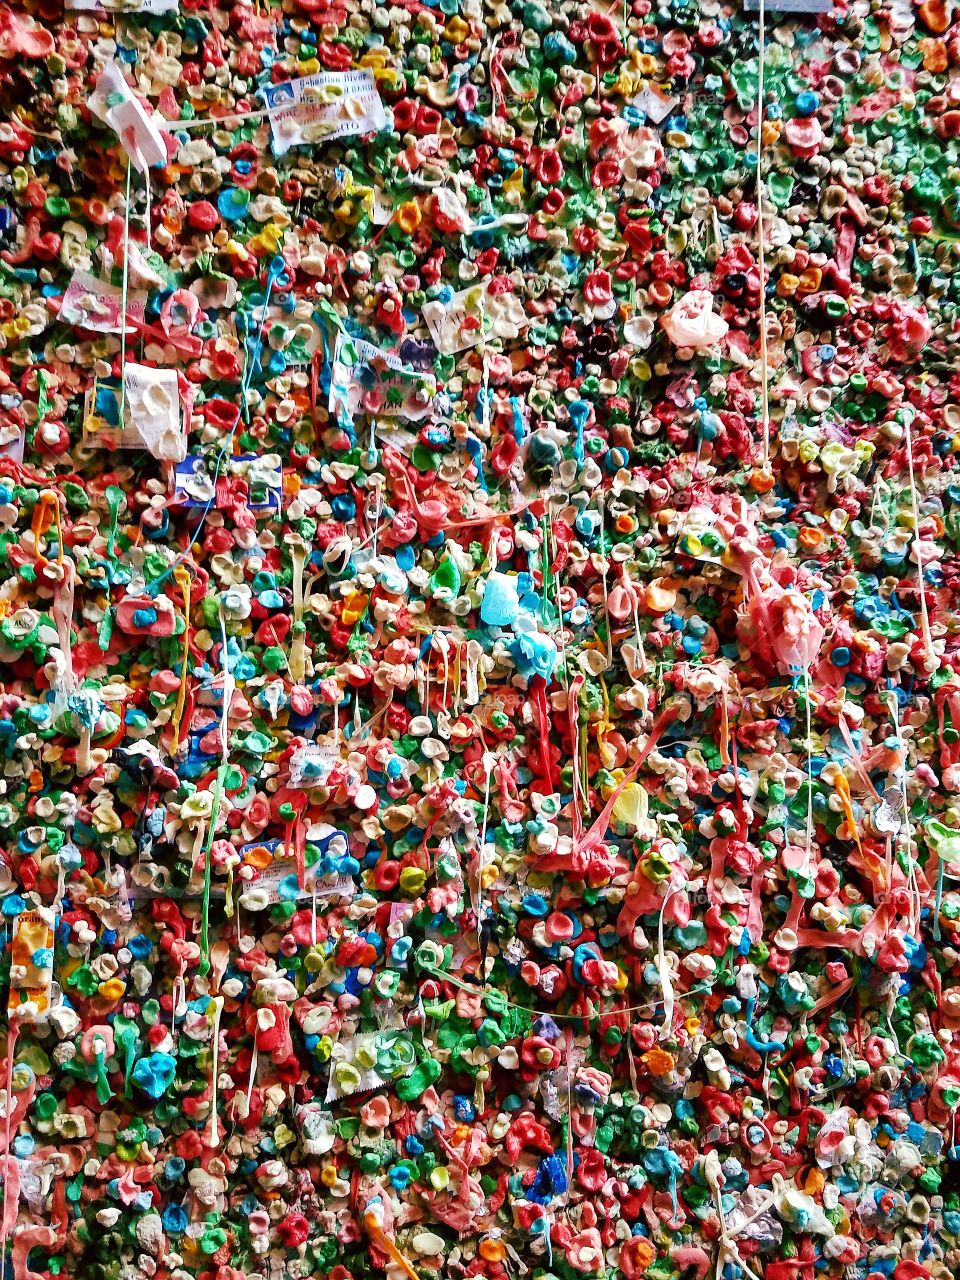 Gum Wall- Seattle, WA